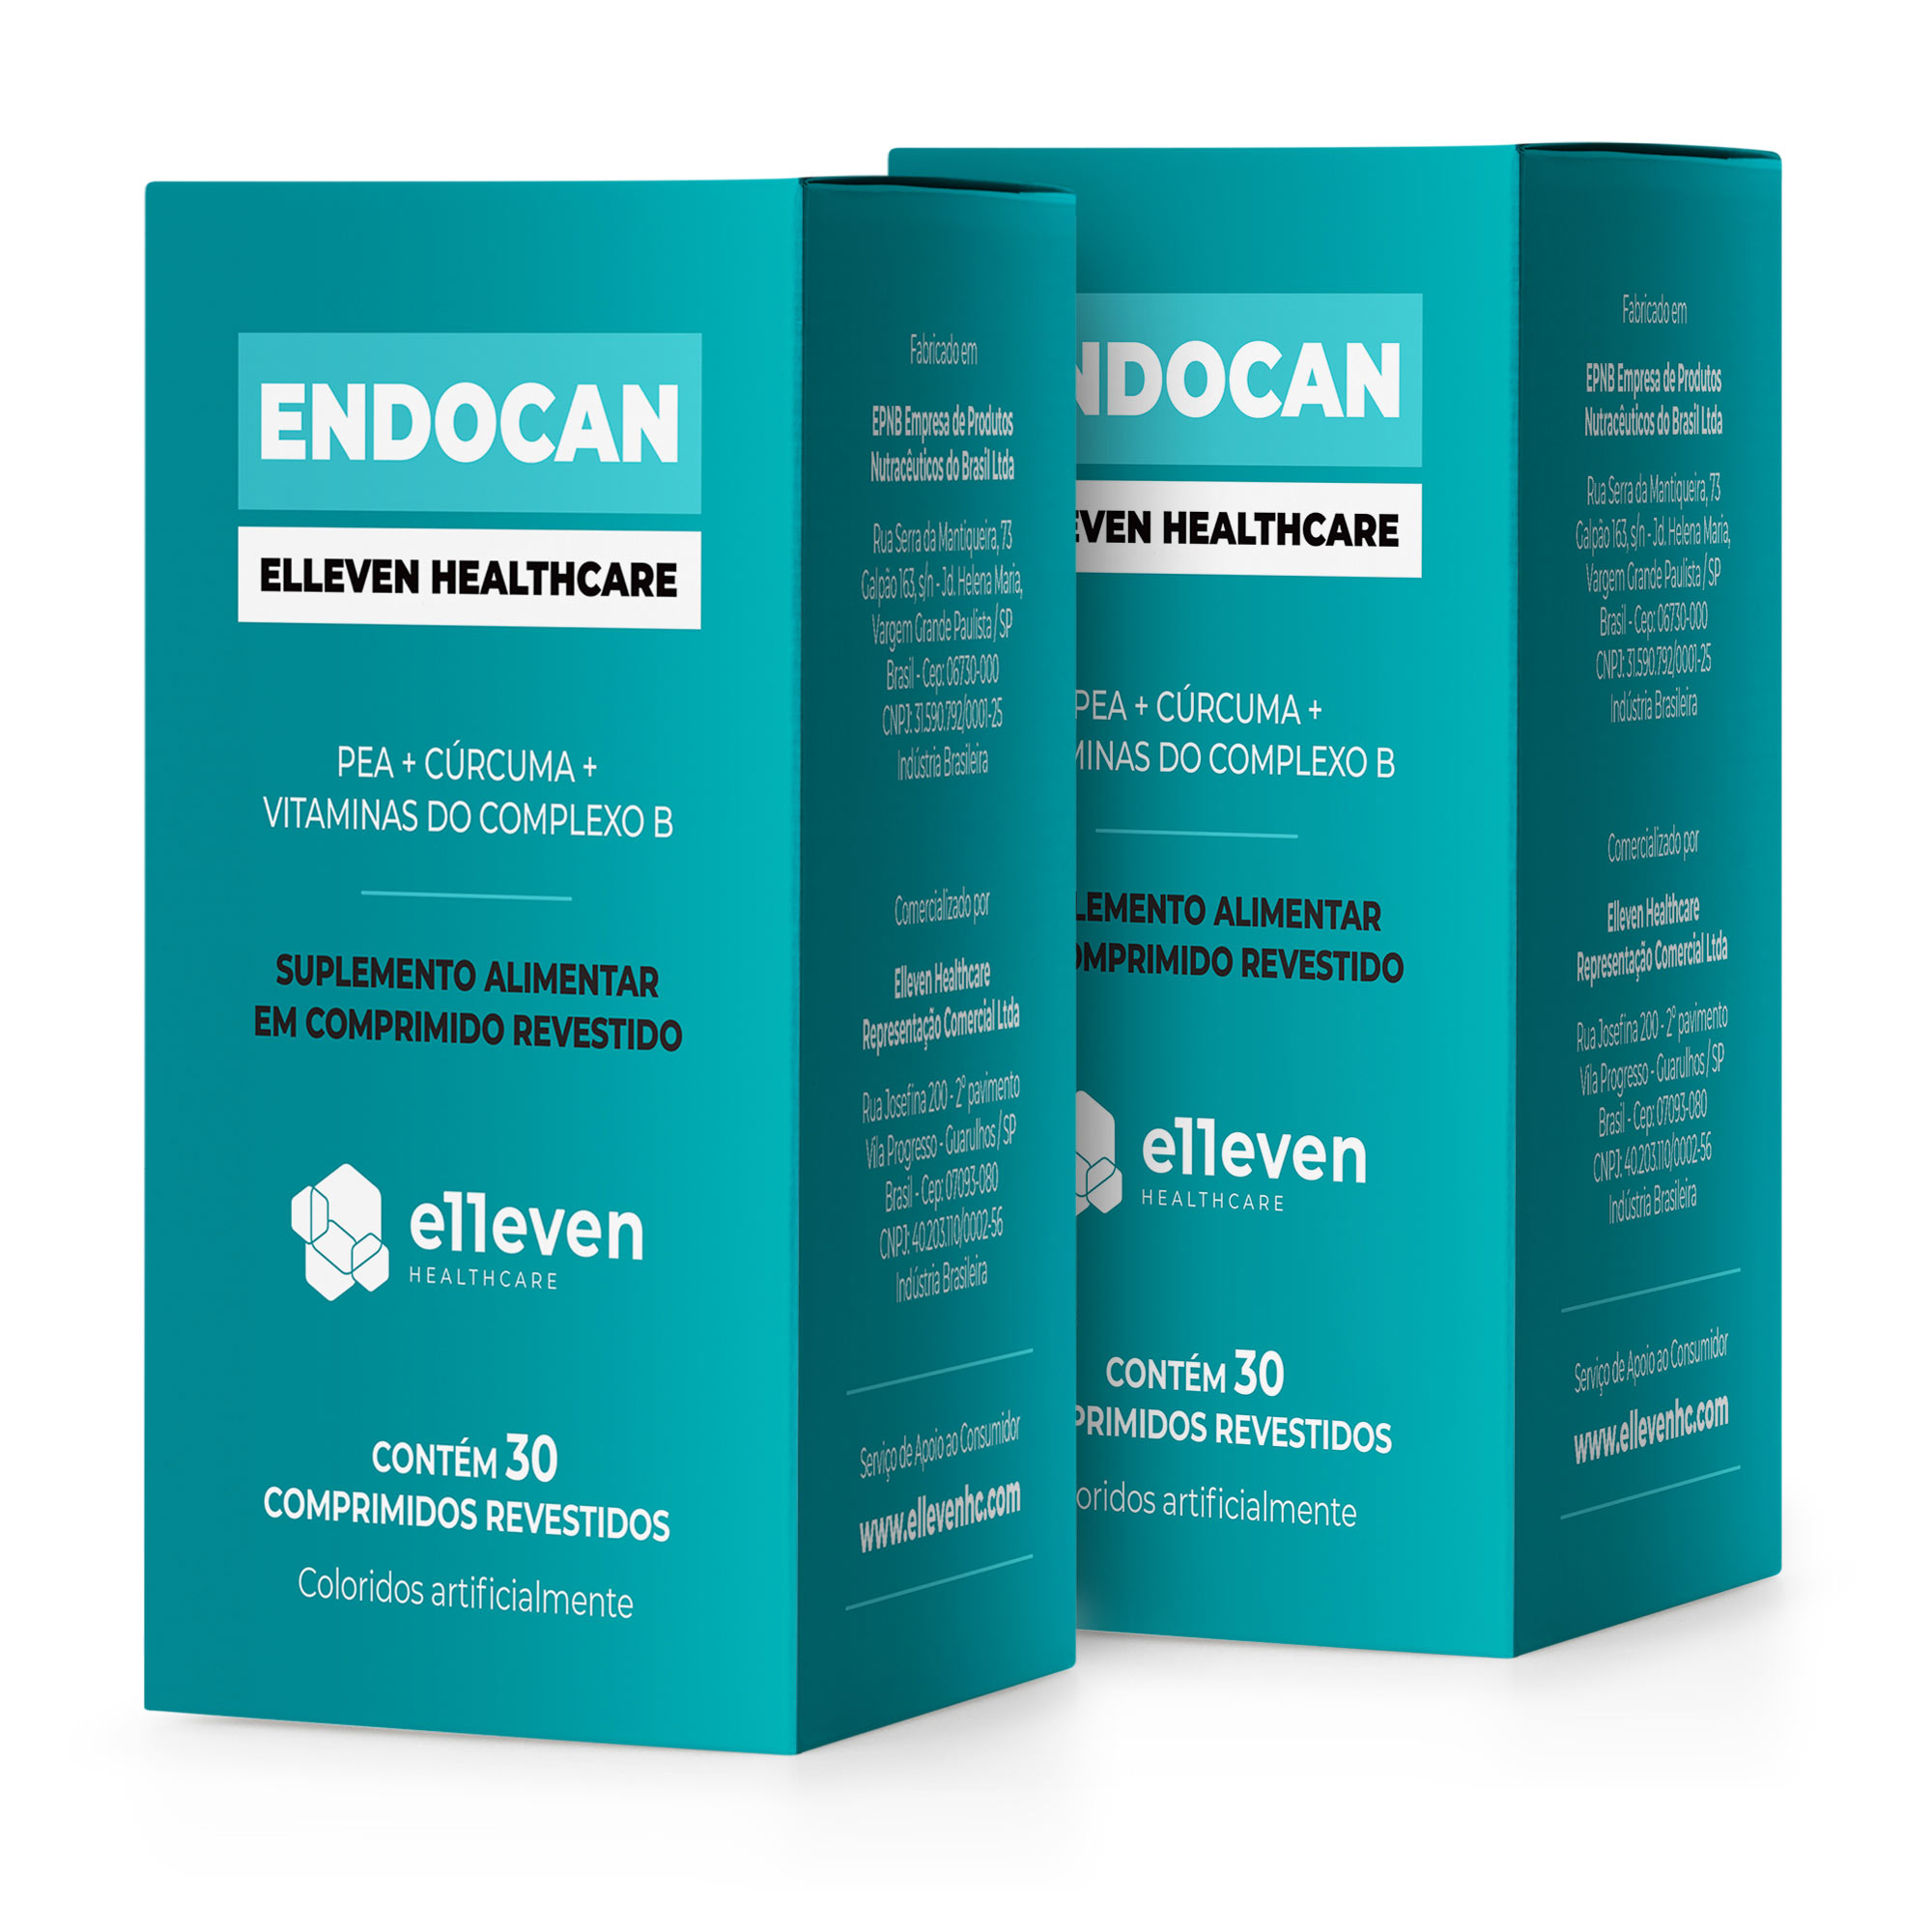 ENDOCAN kit 2x - 10% off